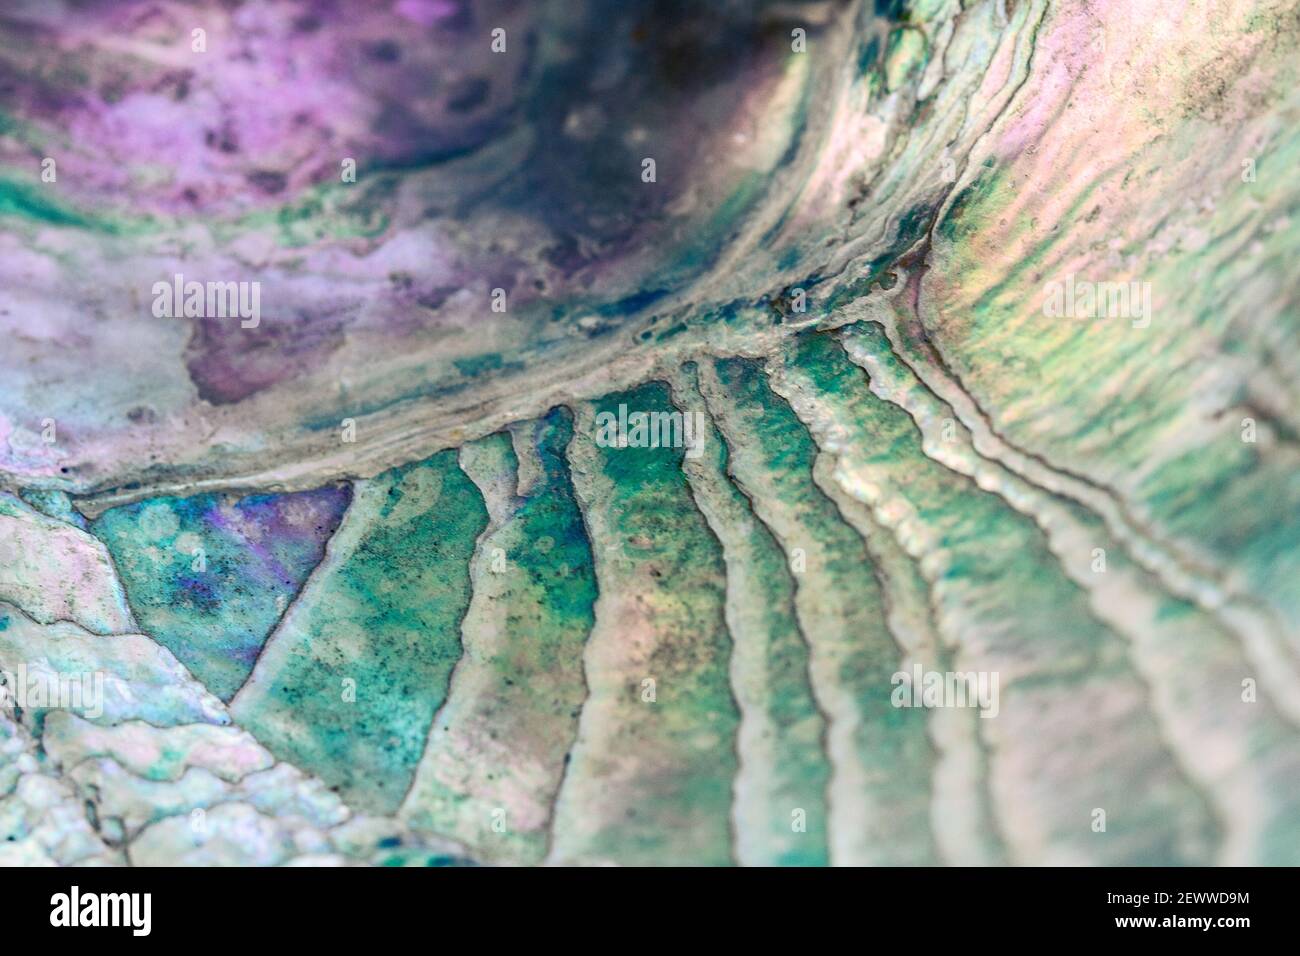 Eine Makroaufnahme einer Abalone-Schale (Haliotis) ist ein Abstrakt von schwankenden Linien, die auf irisierende Pastellfarben geätzt sind. Stockfoto